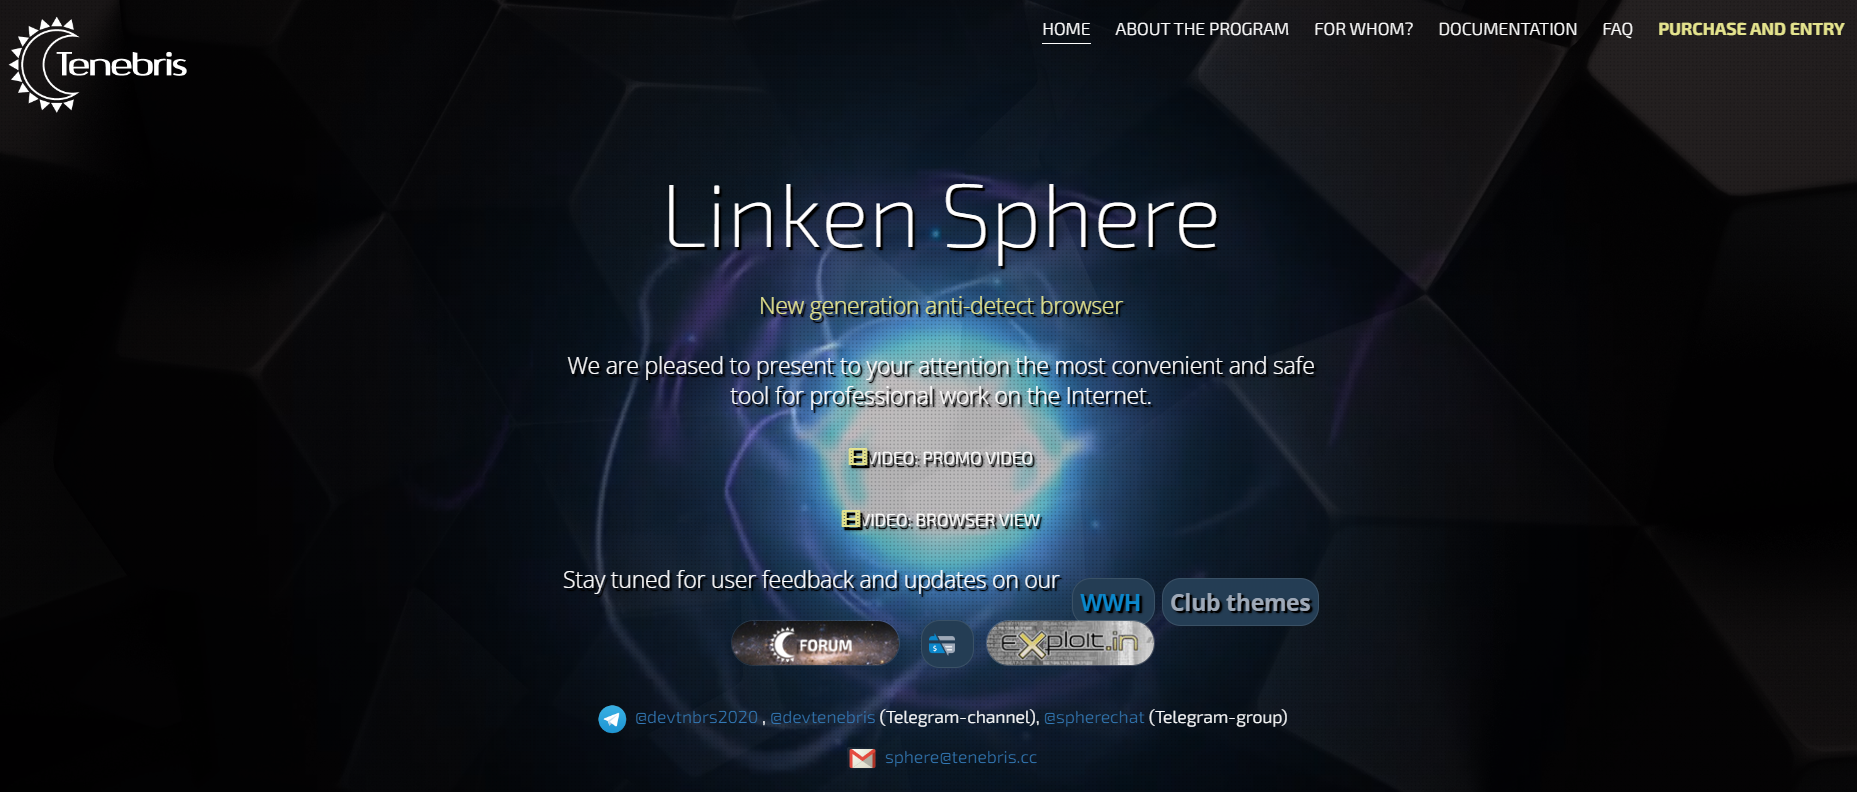 LinkenSphere Overview